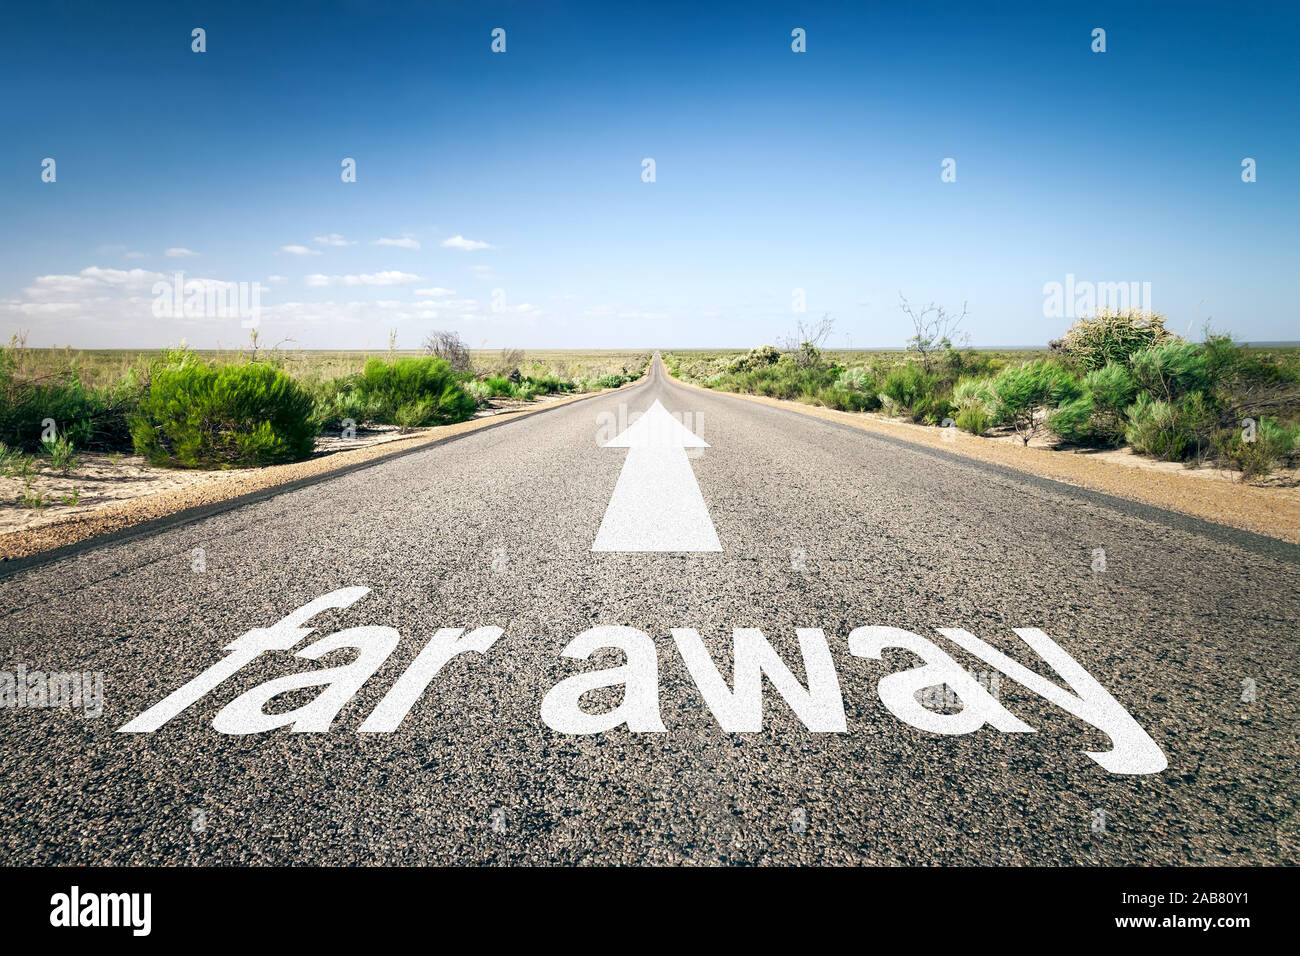 Eine unendlich lange Straße mit der wegweisenden Aufschrift: "weit weg" Stockfoto